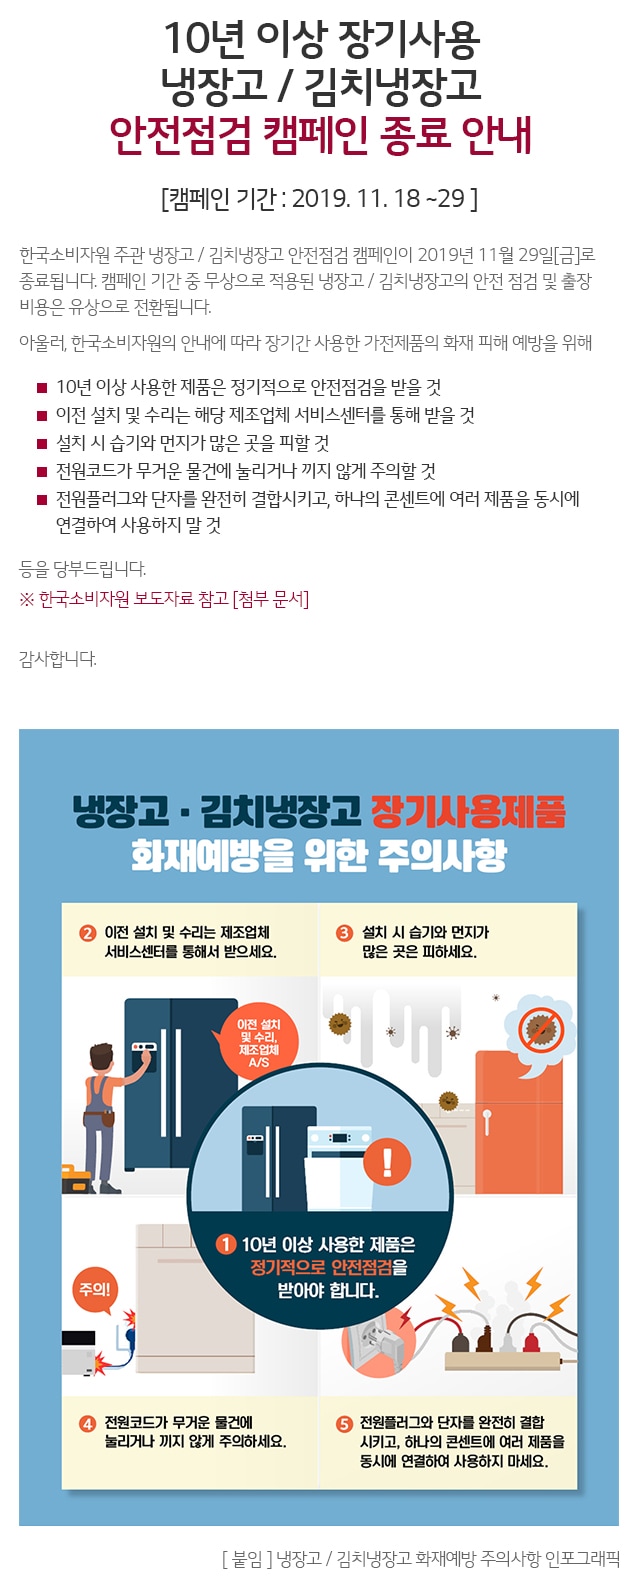 [안내] 10년 이상 장기사용 냉장고 / 김치냉장고 안전점검 캠페인 종료